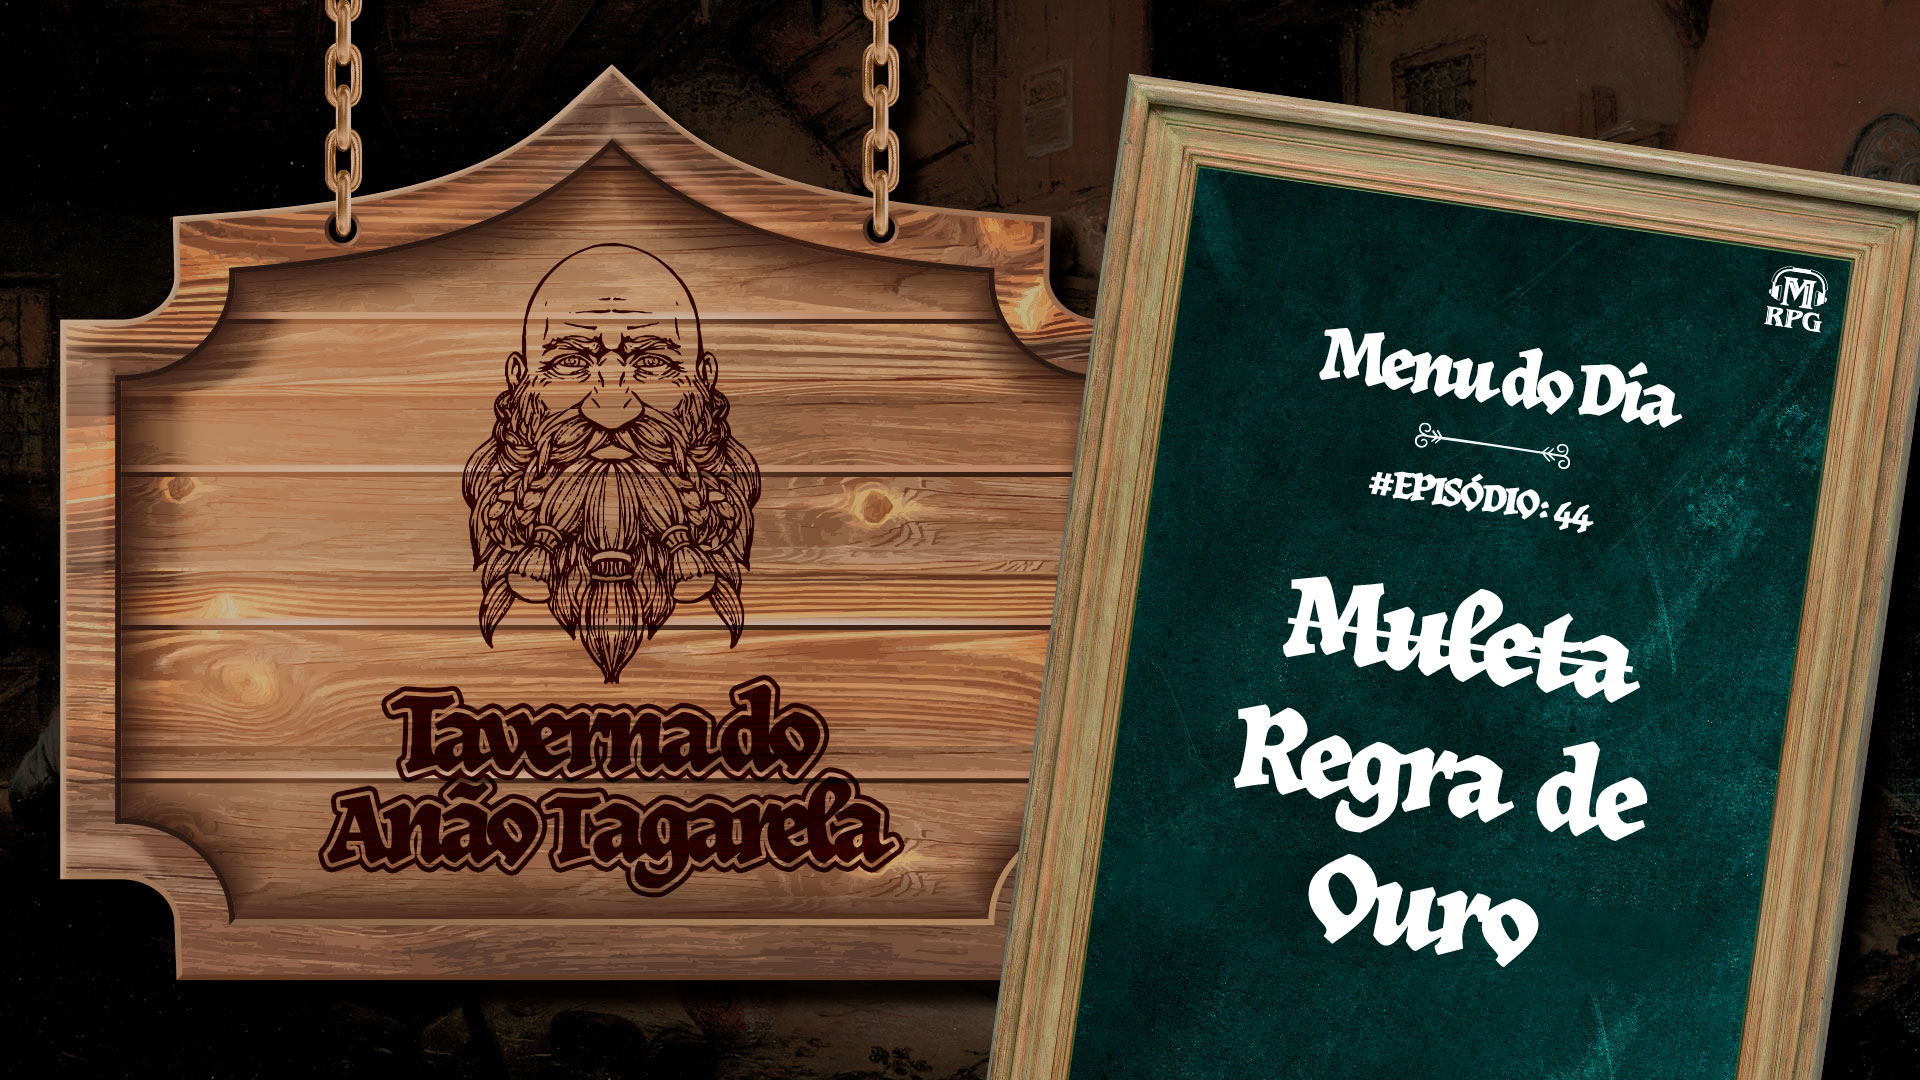 Regra de Ouro – Taverna do Anão Tagarela #44